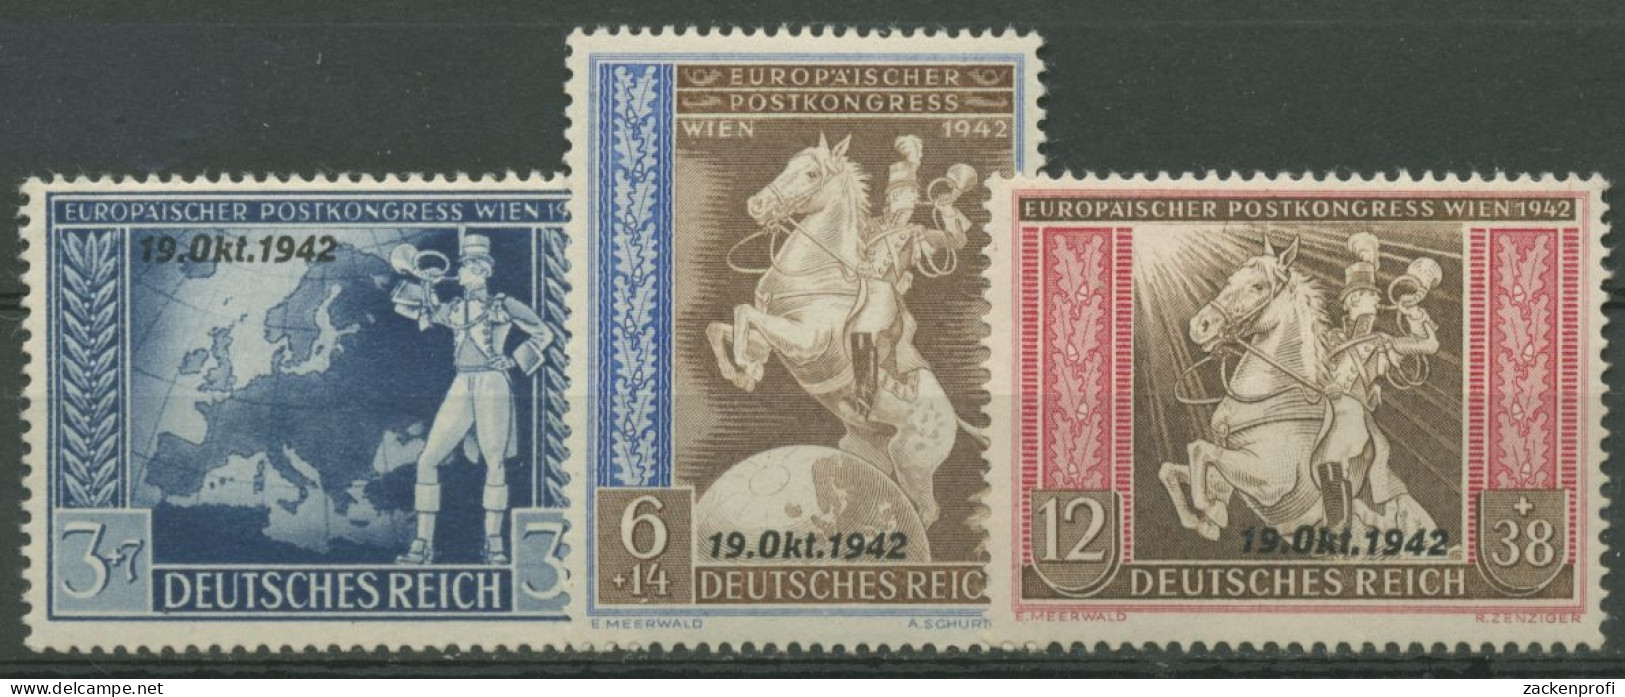 Deutsches Reich 1942 Postkongress Mit Aufdruck 823/25 Mit Falz - Nuevos